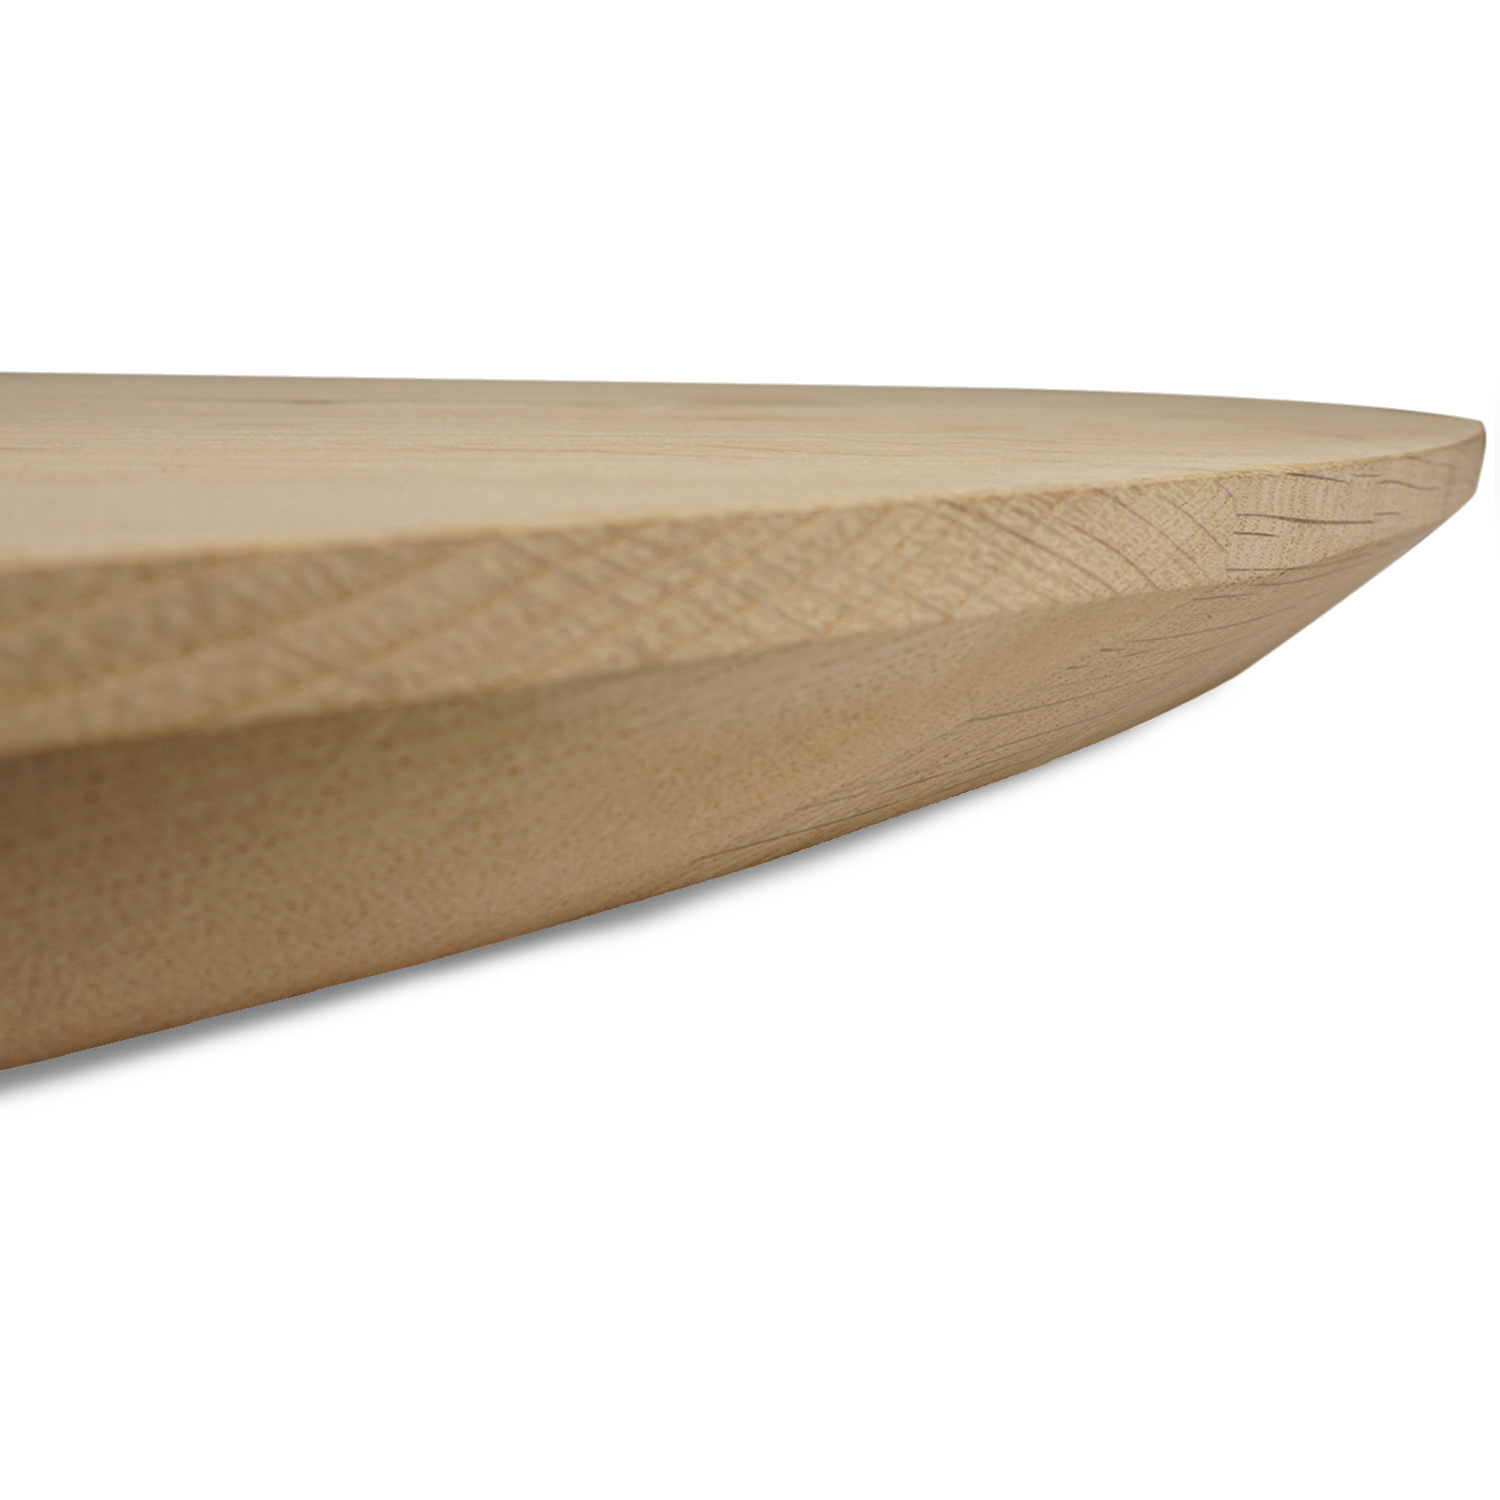  Rond eiken tafelblad op maat - 4 cm dik (1-laag) - foutvrij Europees eikenhout - met brede lamellen (circa 10-12 cm)nhout - verlijmd kd 8-12% - diameter van 35 tot 117 cm